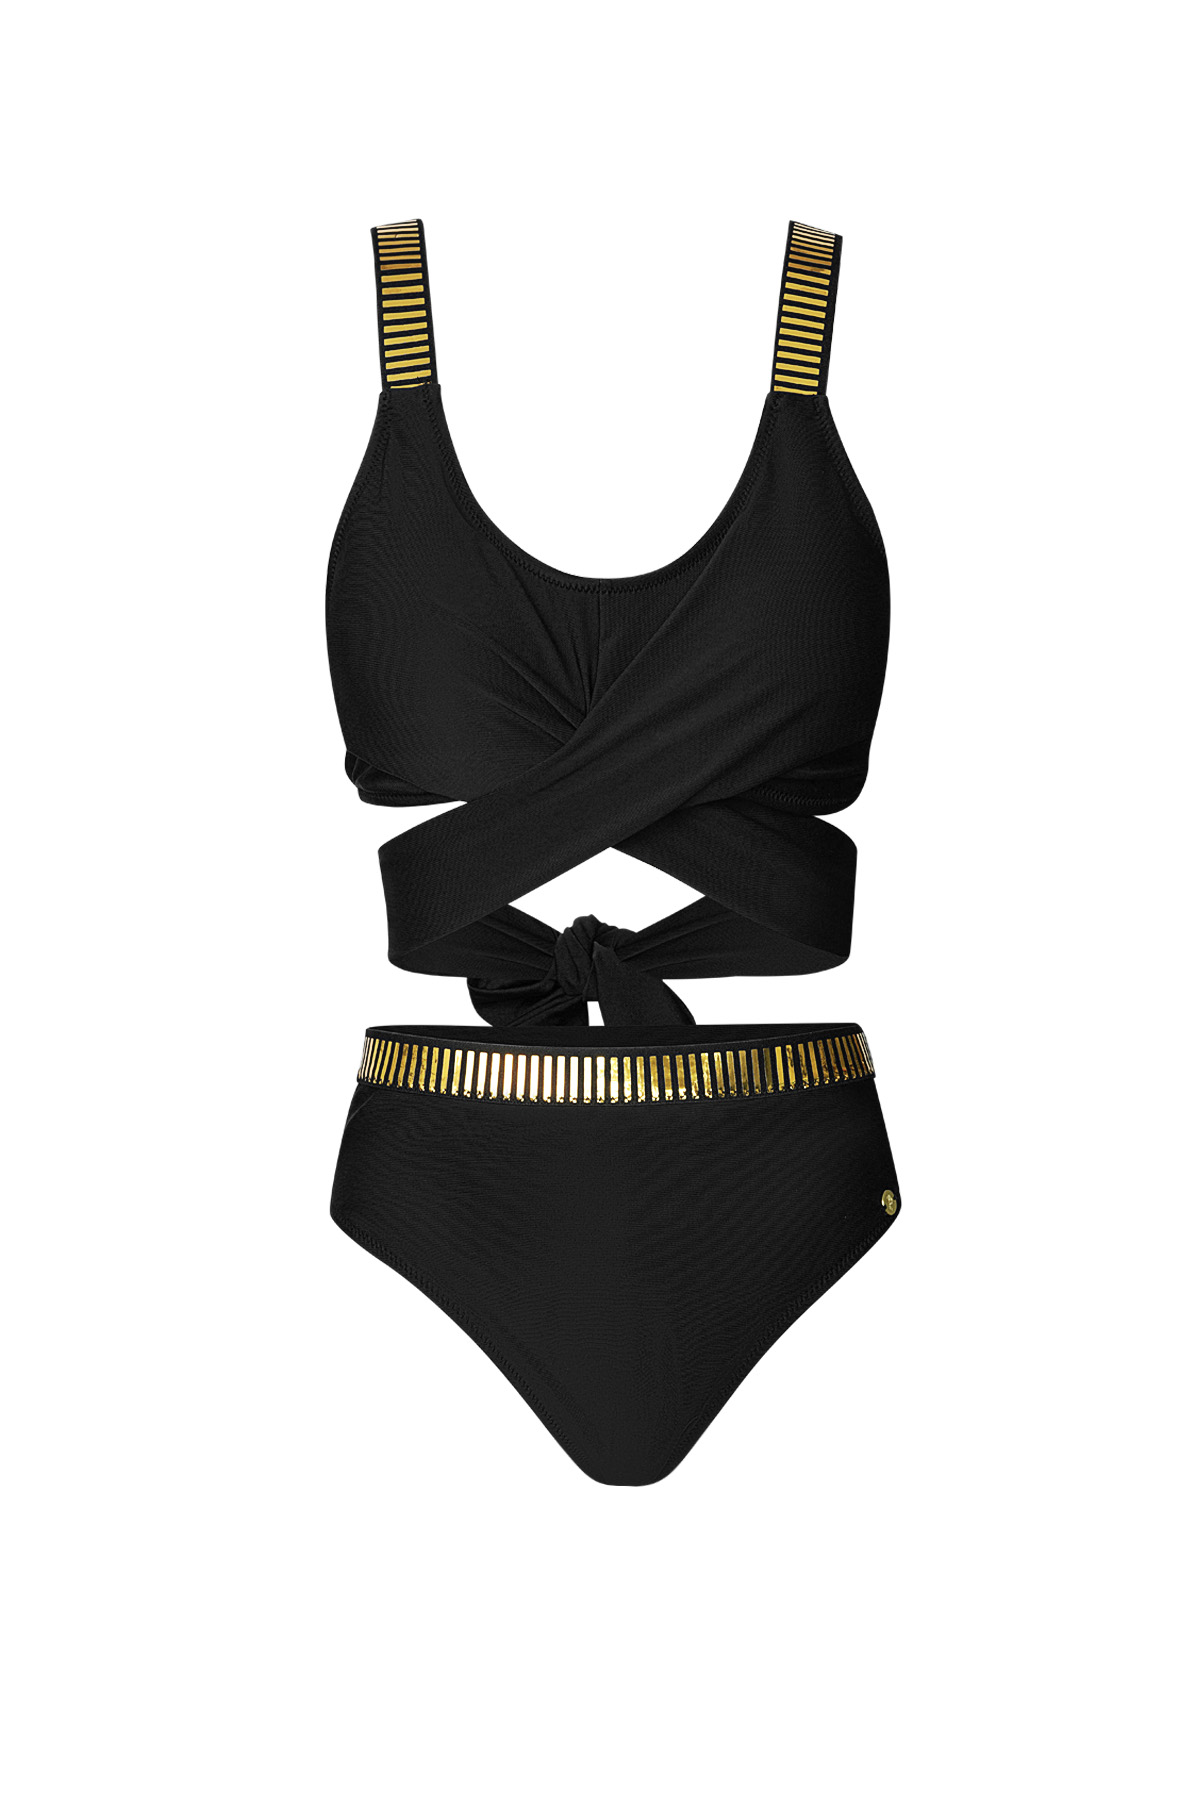 Button bikini gold stripes - black L h5 